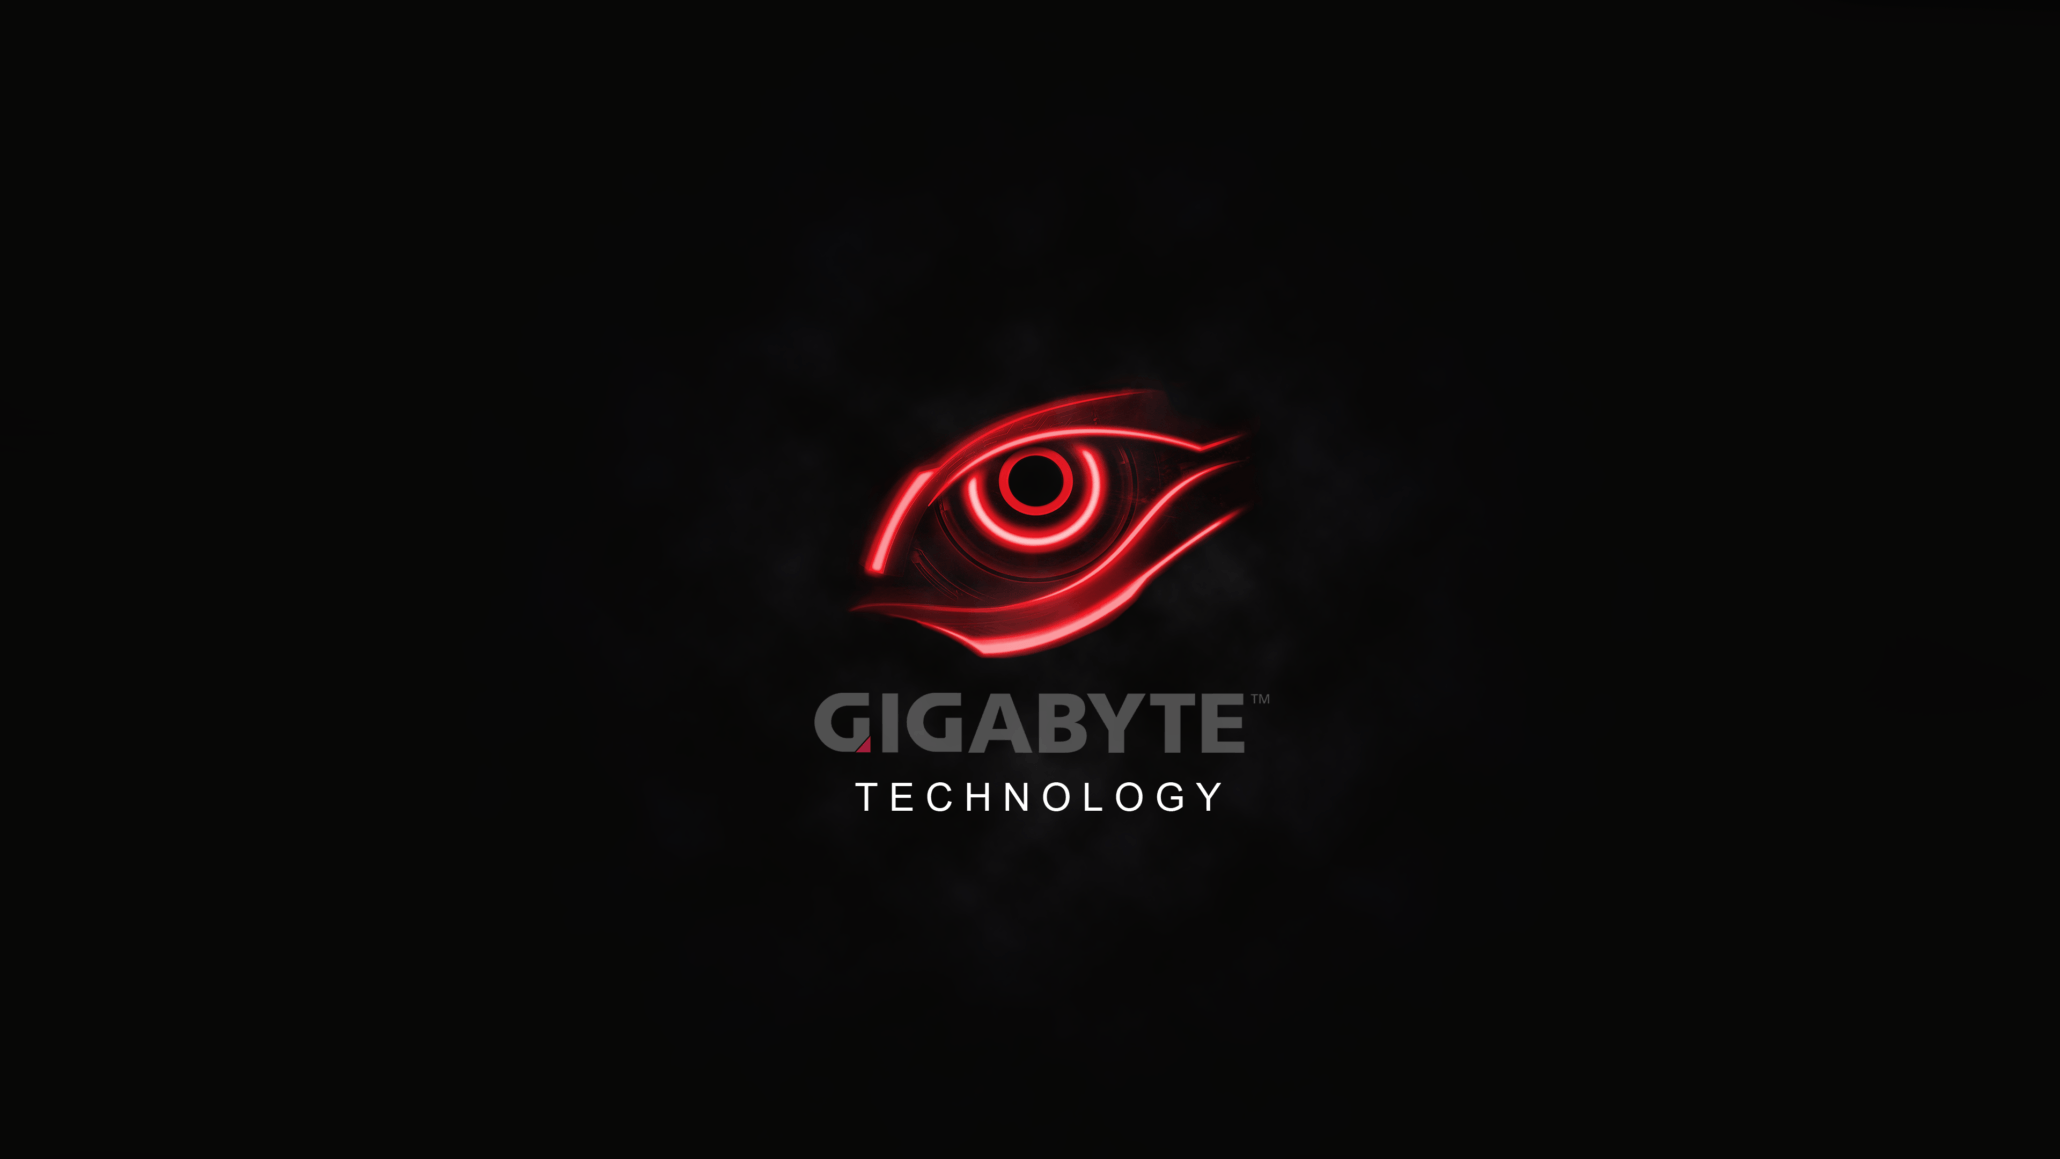 New Gigabyte Logo - GIGABYTE Officially Launches Two New SKUs